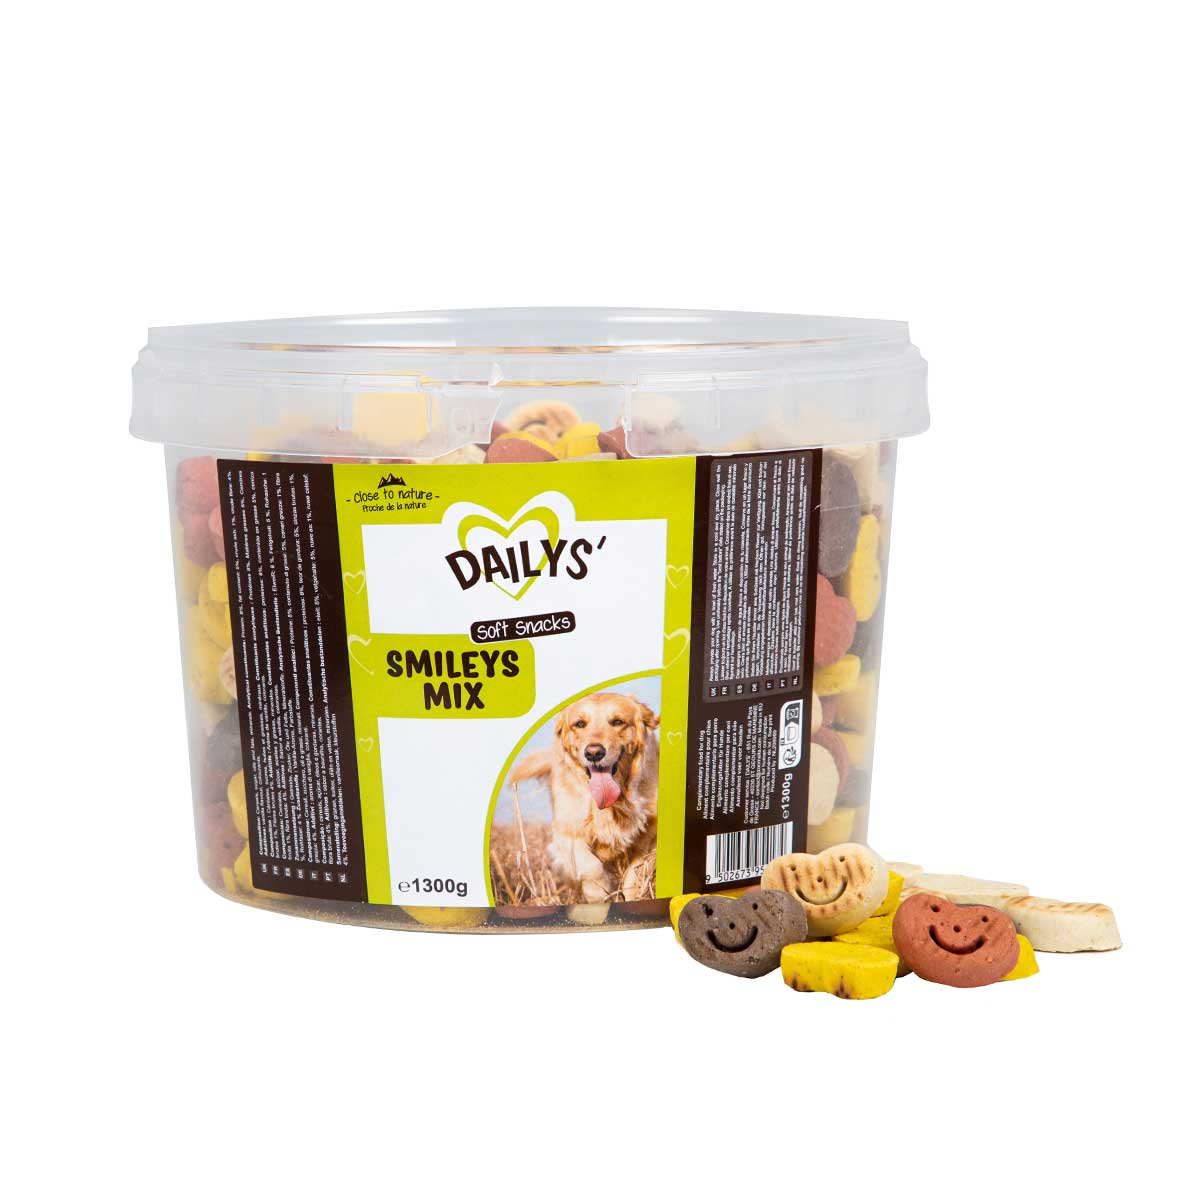 Biscoitos para cão de baunilha Smileys Mix DAILYS